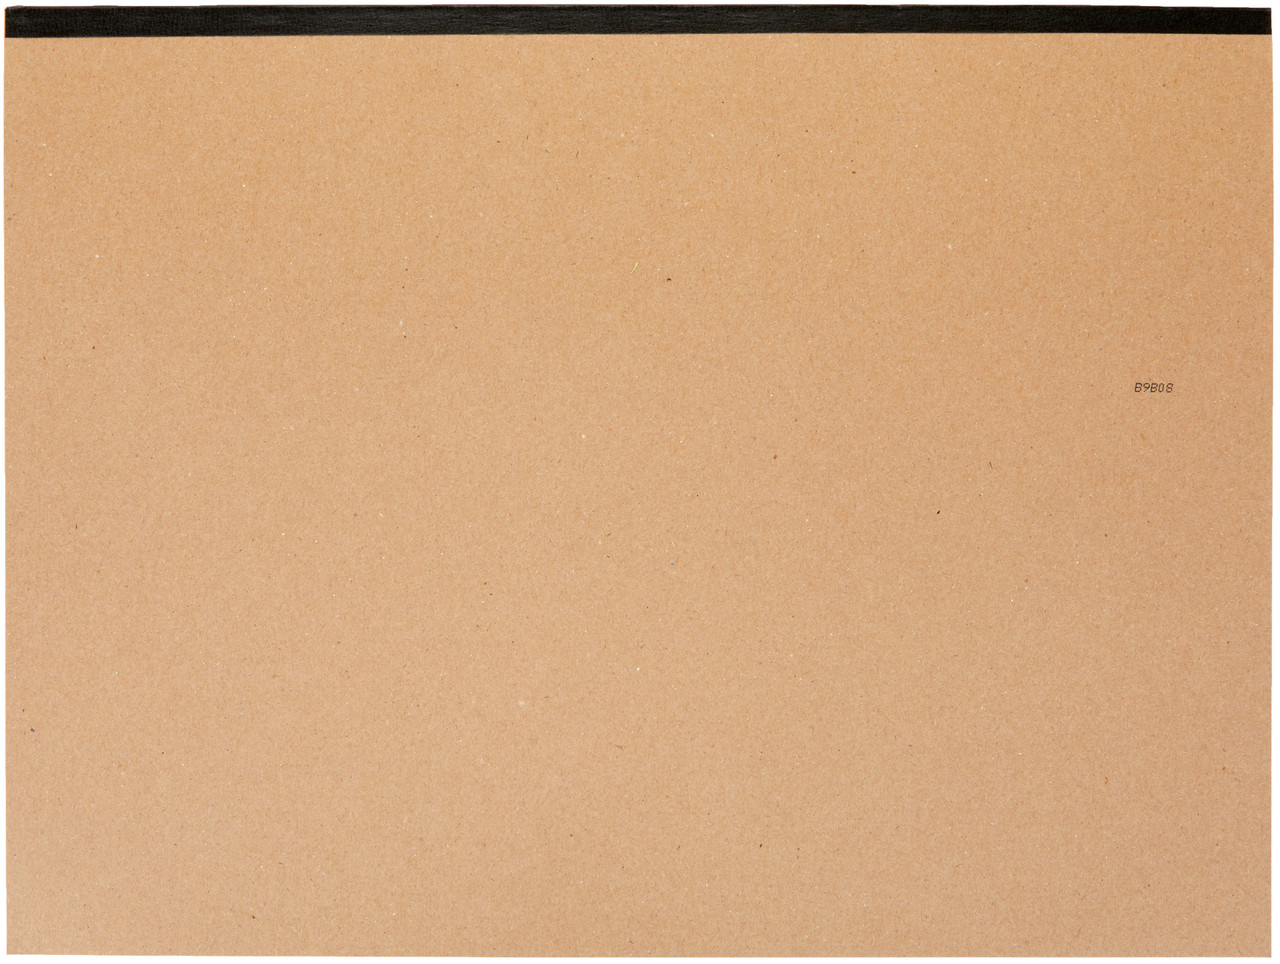 Finger Paint Paper Pad -12x18 (2Pack)